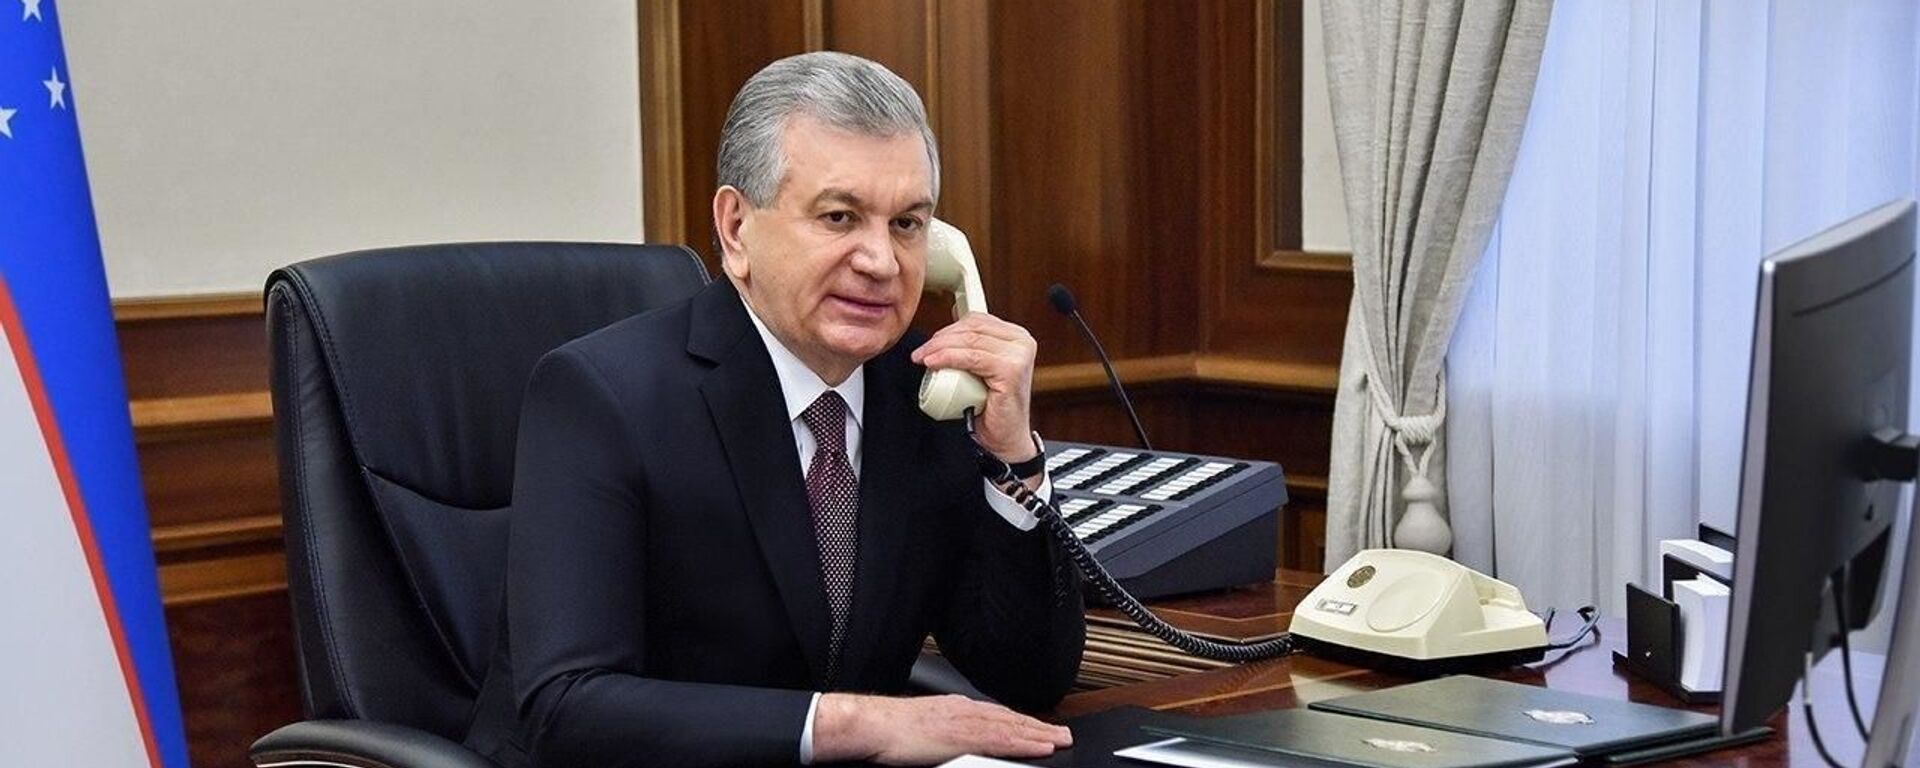 Президент Шавкат Мирзиёев разговаривает по телефону - Sputnik Узбекистан, 1920, 15.08.2021